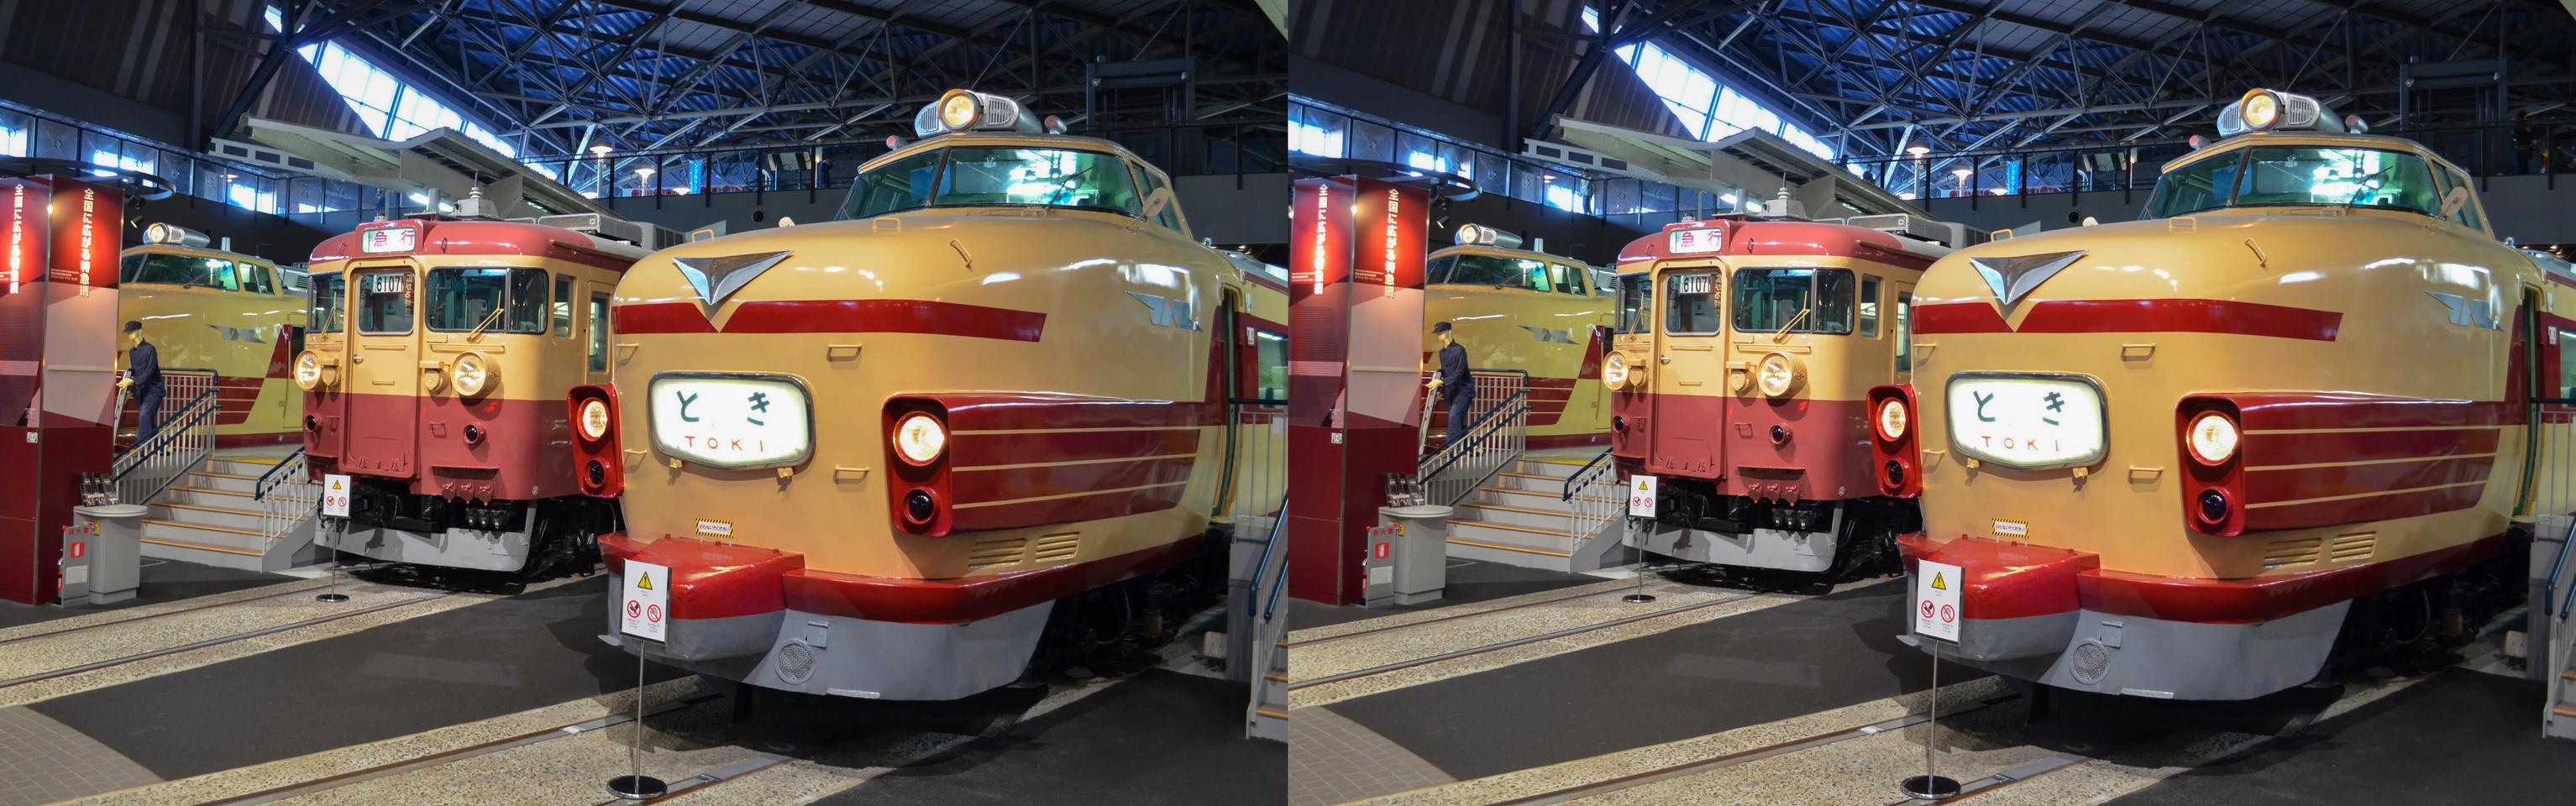 Train Museum